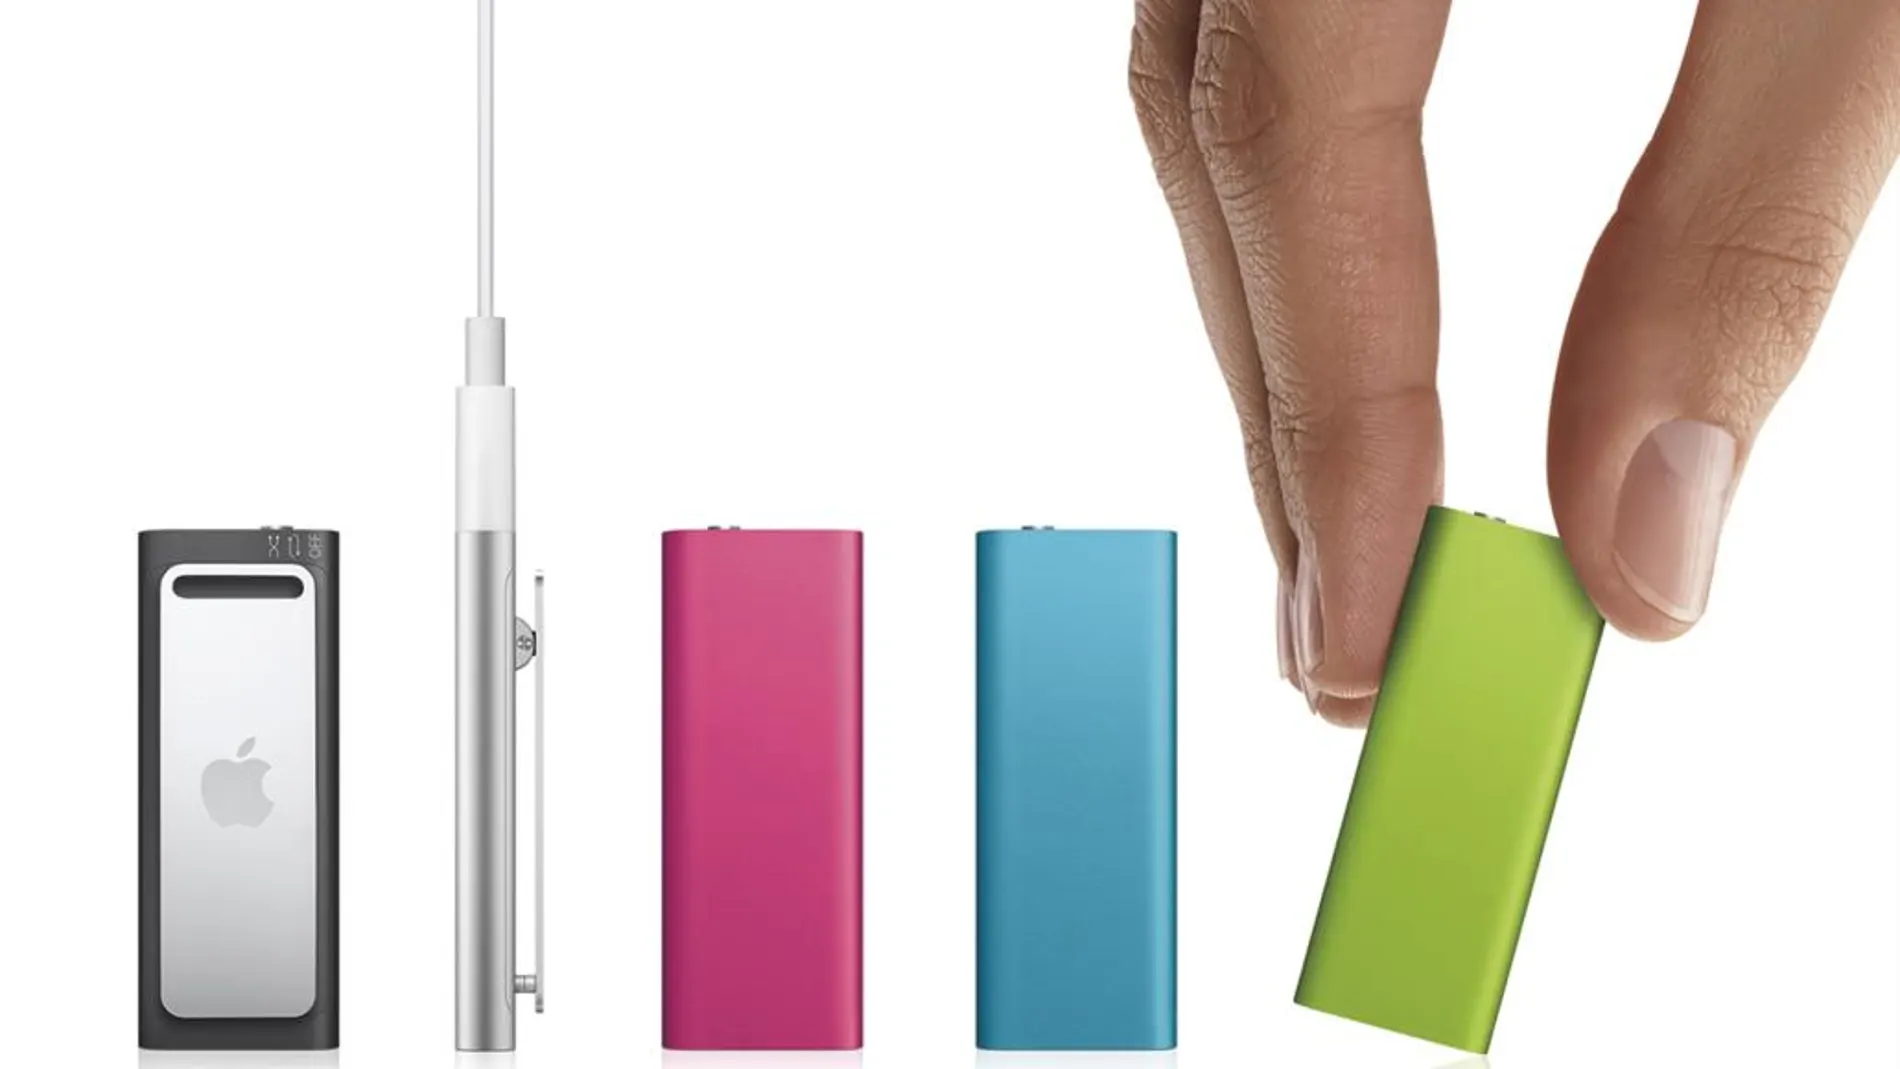 El iPod Shuffles, en la campaña de publicidad de 2009 con motivo de su salida al mercado